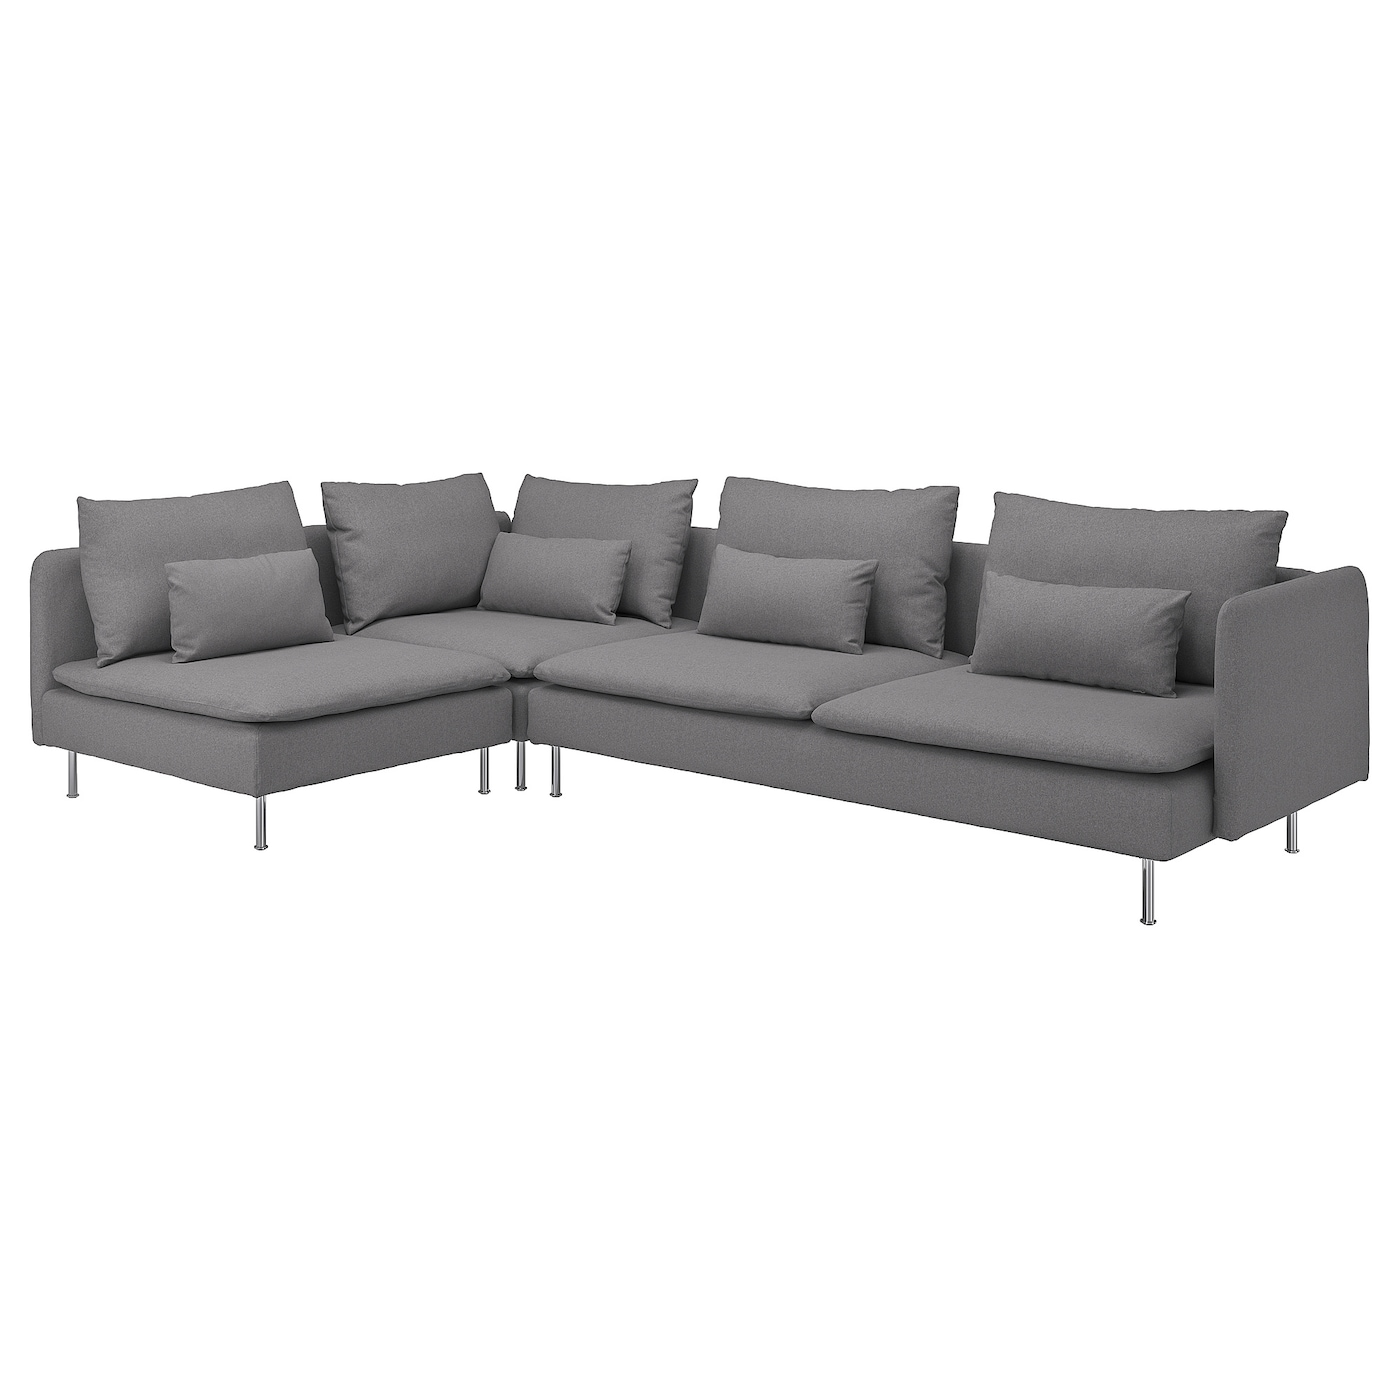 4-местный угловой диван - IKEA SÖDERHAMN/SODERHAMN, 99x192/291см, серый/светло-серый, СЕДЕРХАМН ИКЕА